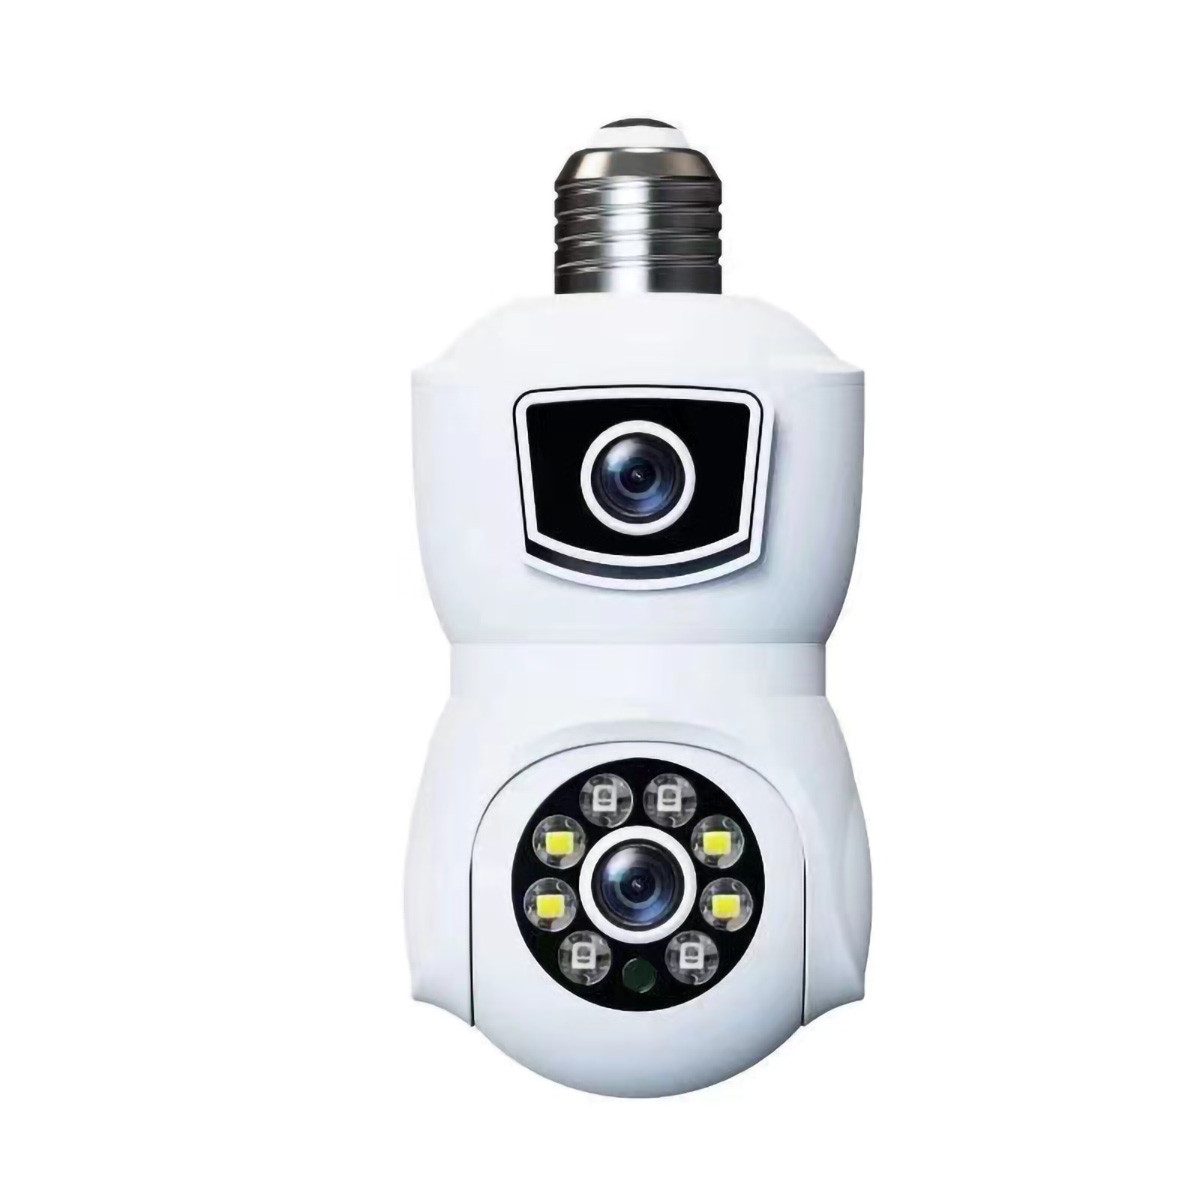 yozhiqu V380 Drahtlose Dome-Kamera mit zwei Objektiven - HD 4 Megapixel Videokamera (Nachtsicht, automatische Verfolgung für die Sicherheit Ihres Hauses)